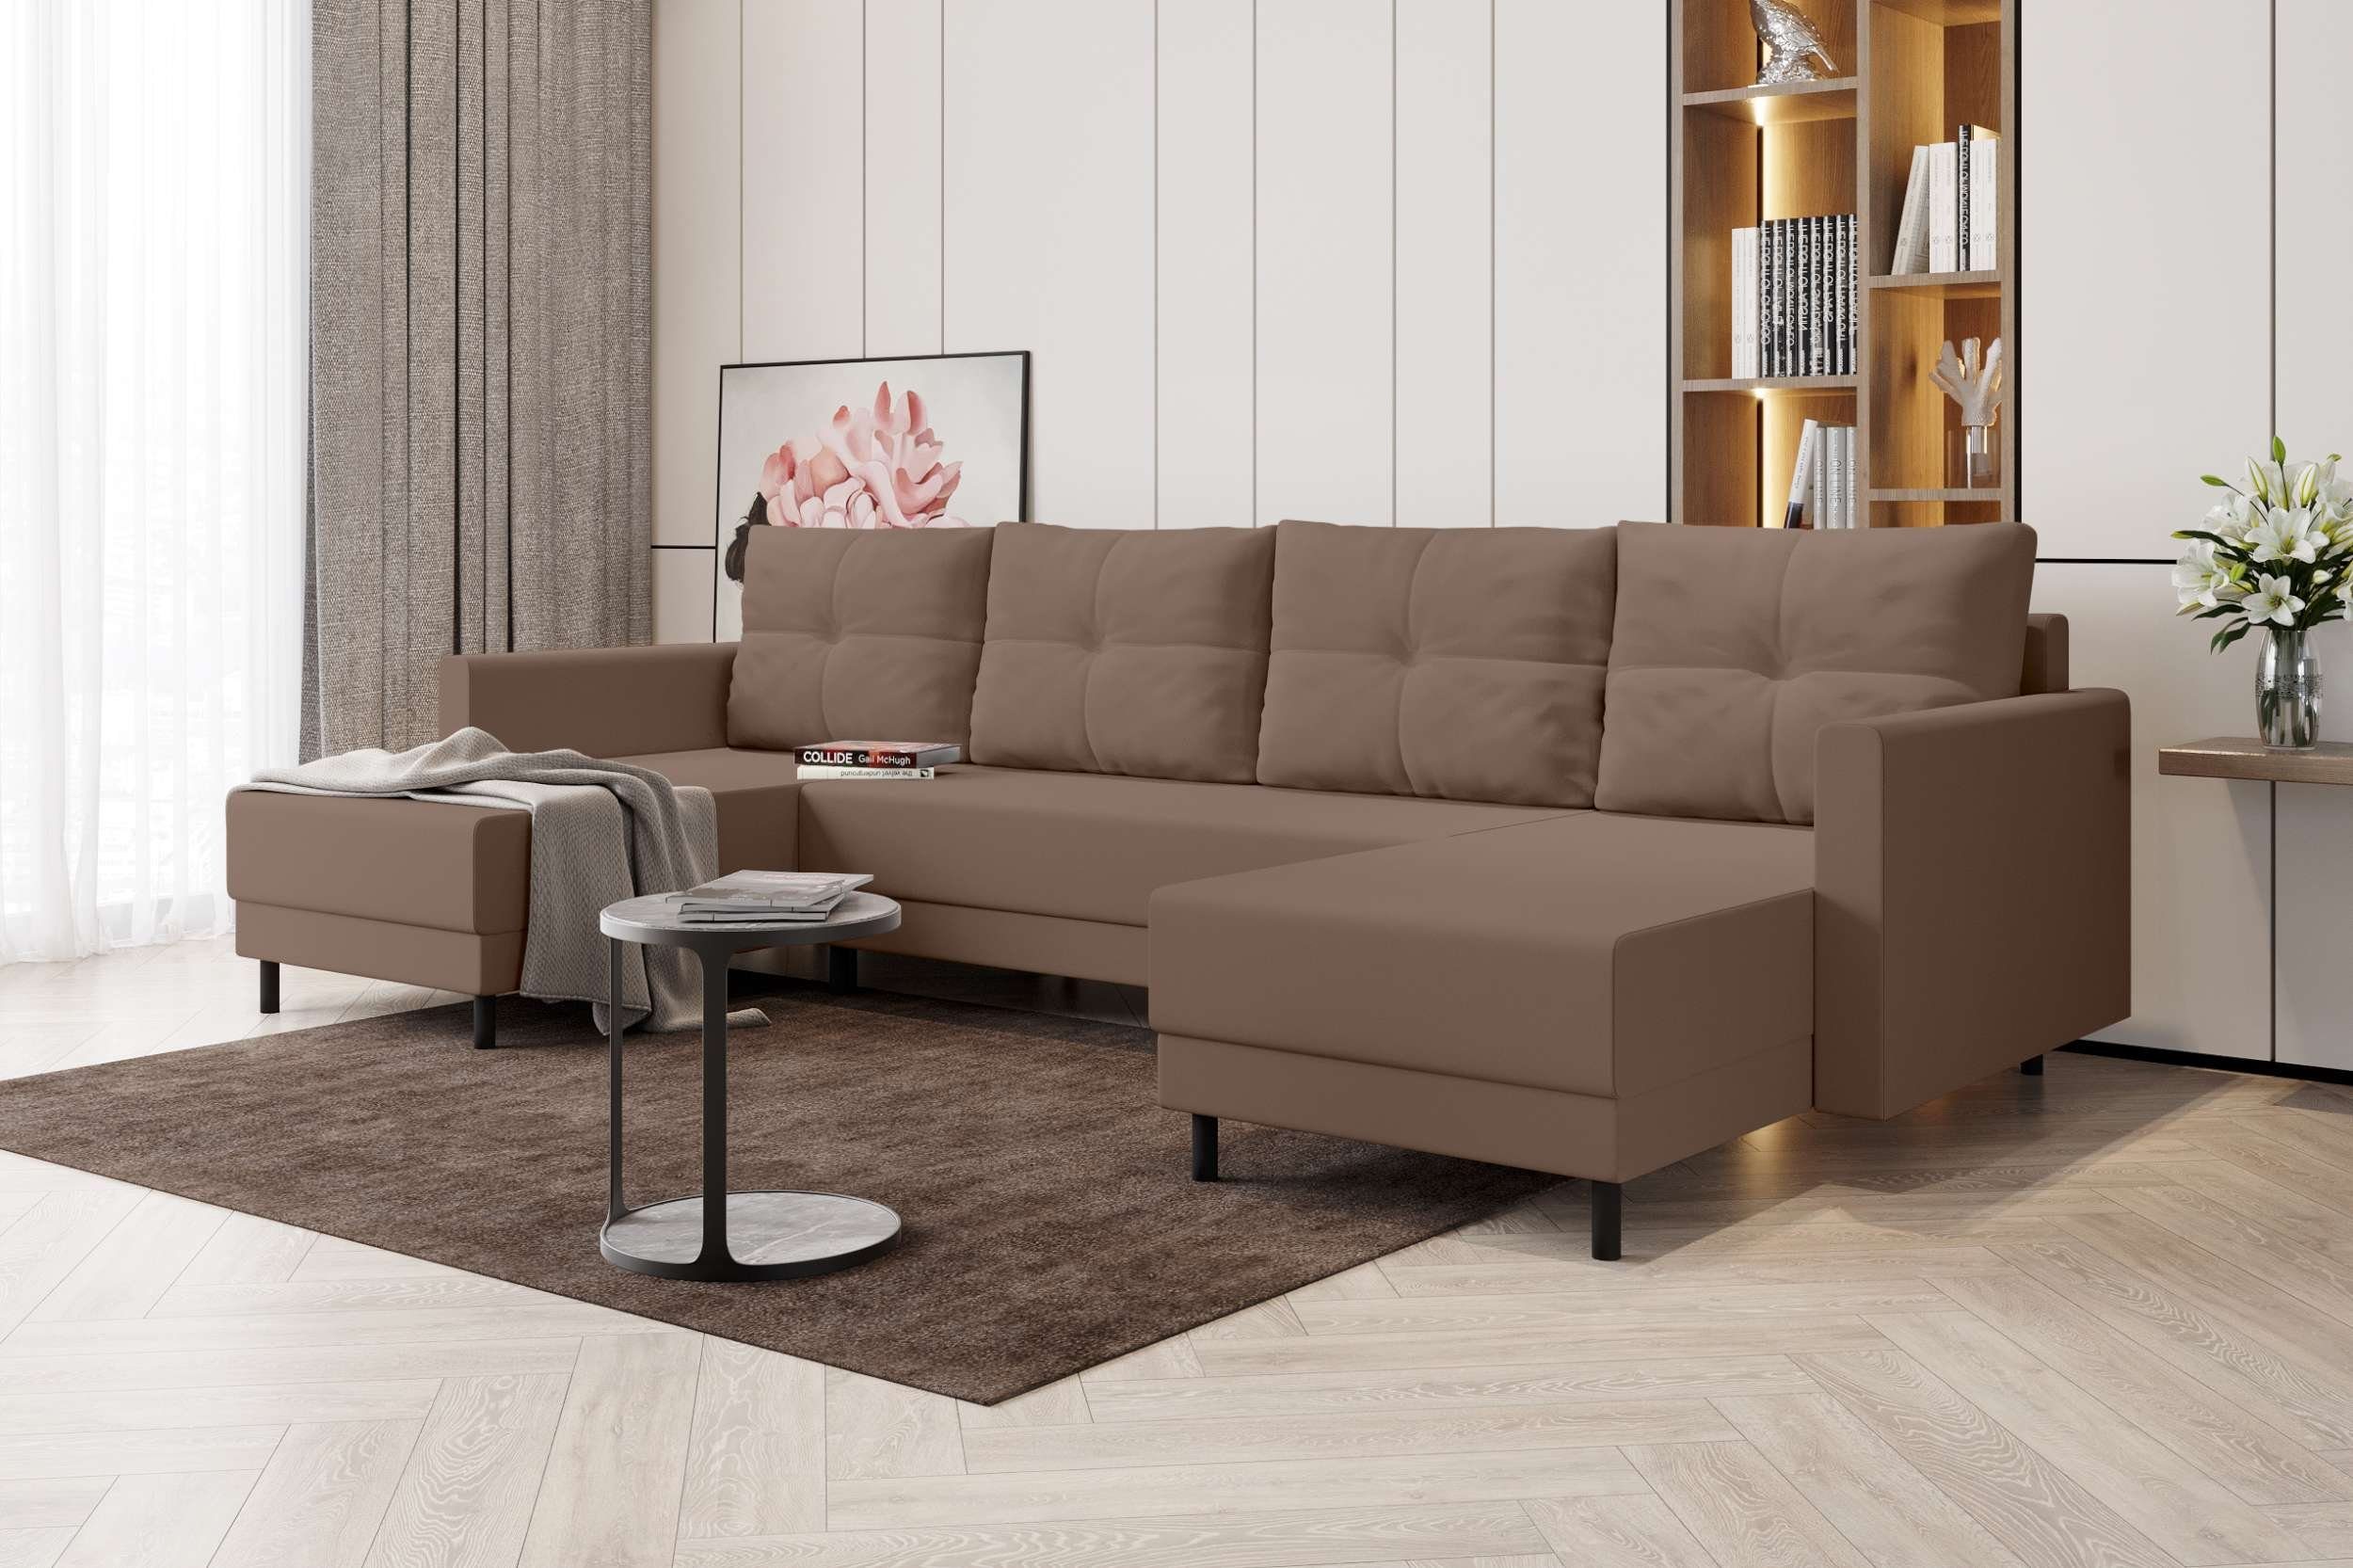 Stylefy Wohnlandschaft Selena, U-Form, Eckcouch, Sofa, Sitzkomfort, mit Bettfunktion, mit Bettkasten, Modern Design